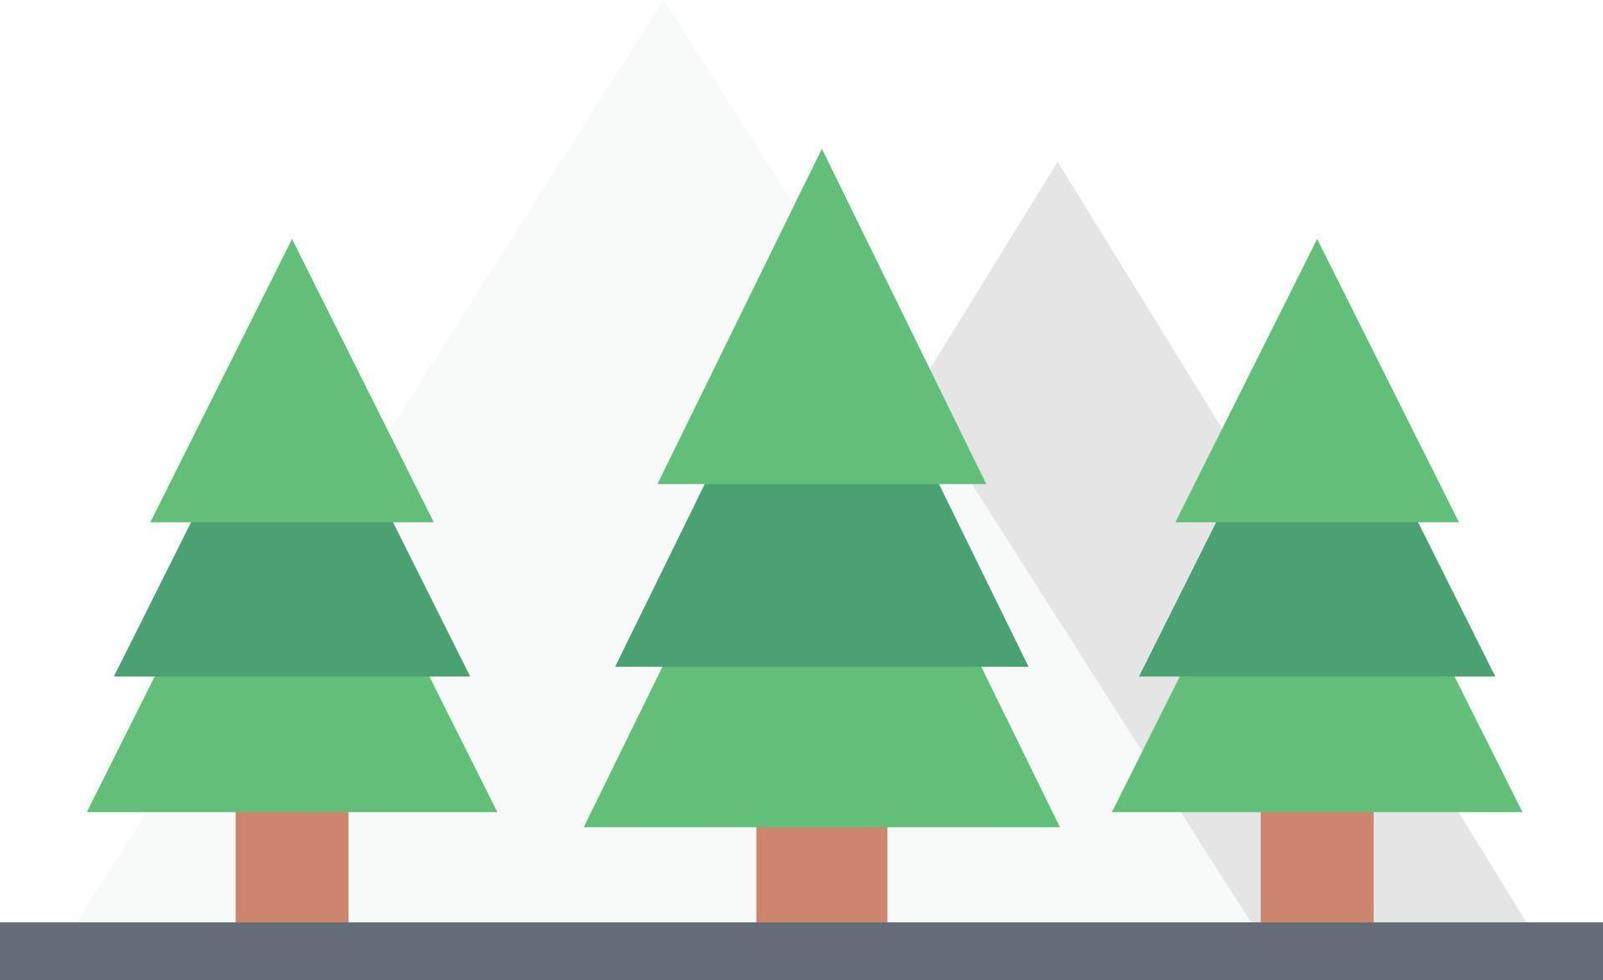 weihnachtsbäume vector illustration auf einem hintergrund. hochwertige symbole. vektorikonen für konzept und grafikdesign.